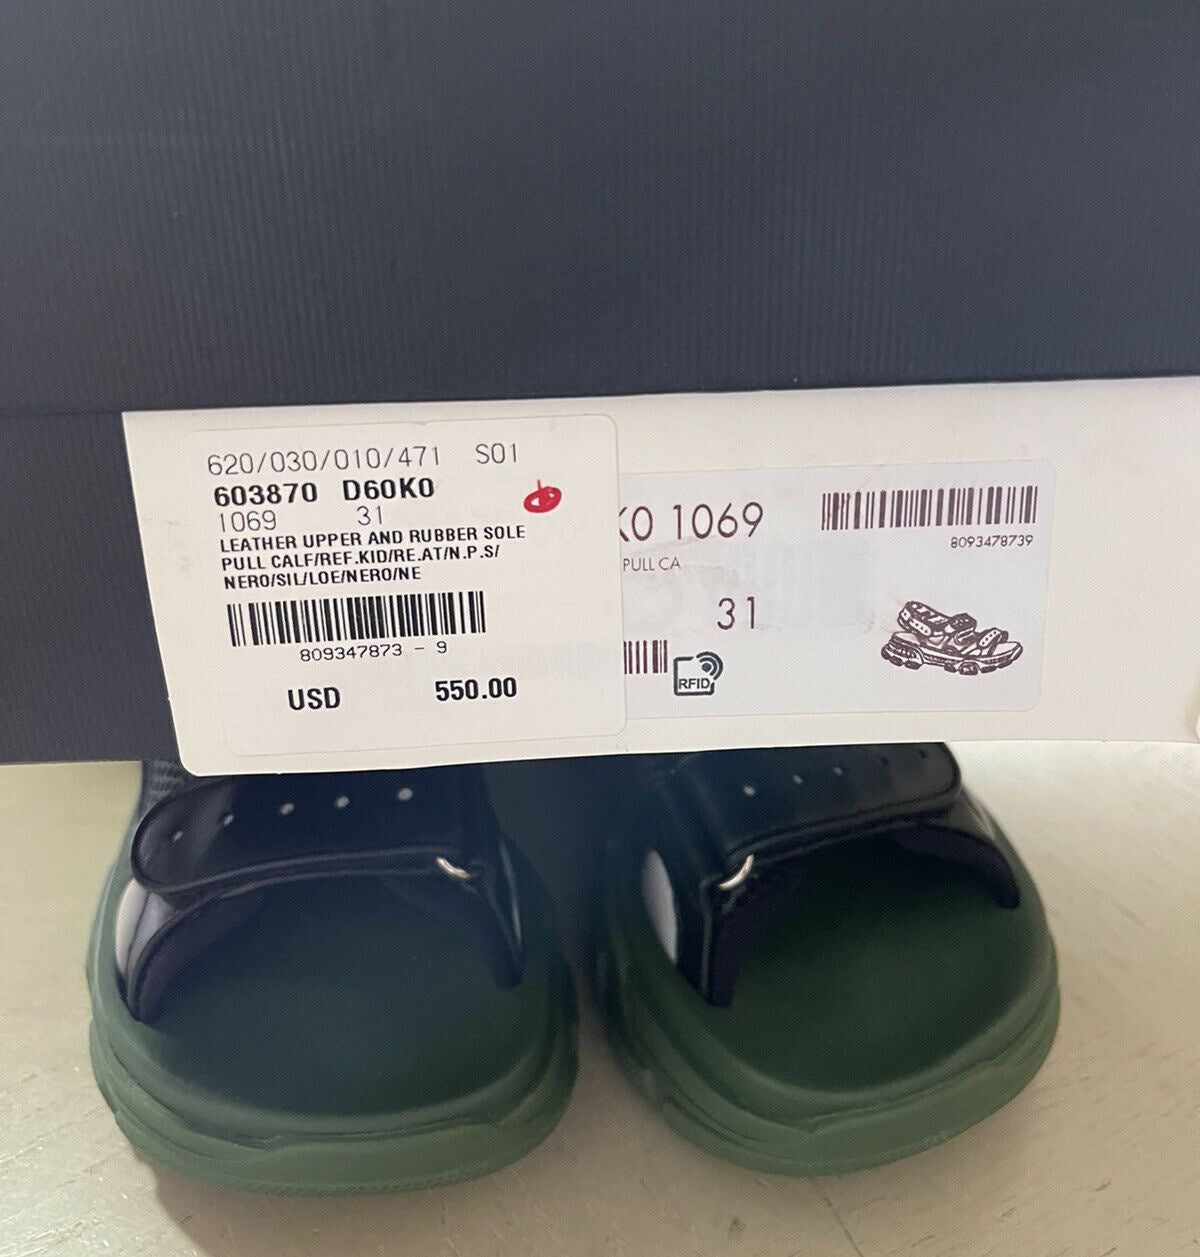 NIB $1100 Детские кожаные сандалии Gucci, черный/зеленый, размер 31/13, США, 6 лет